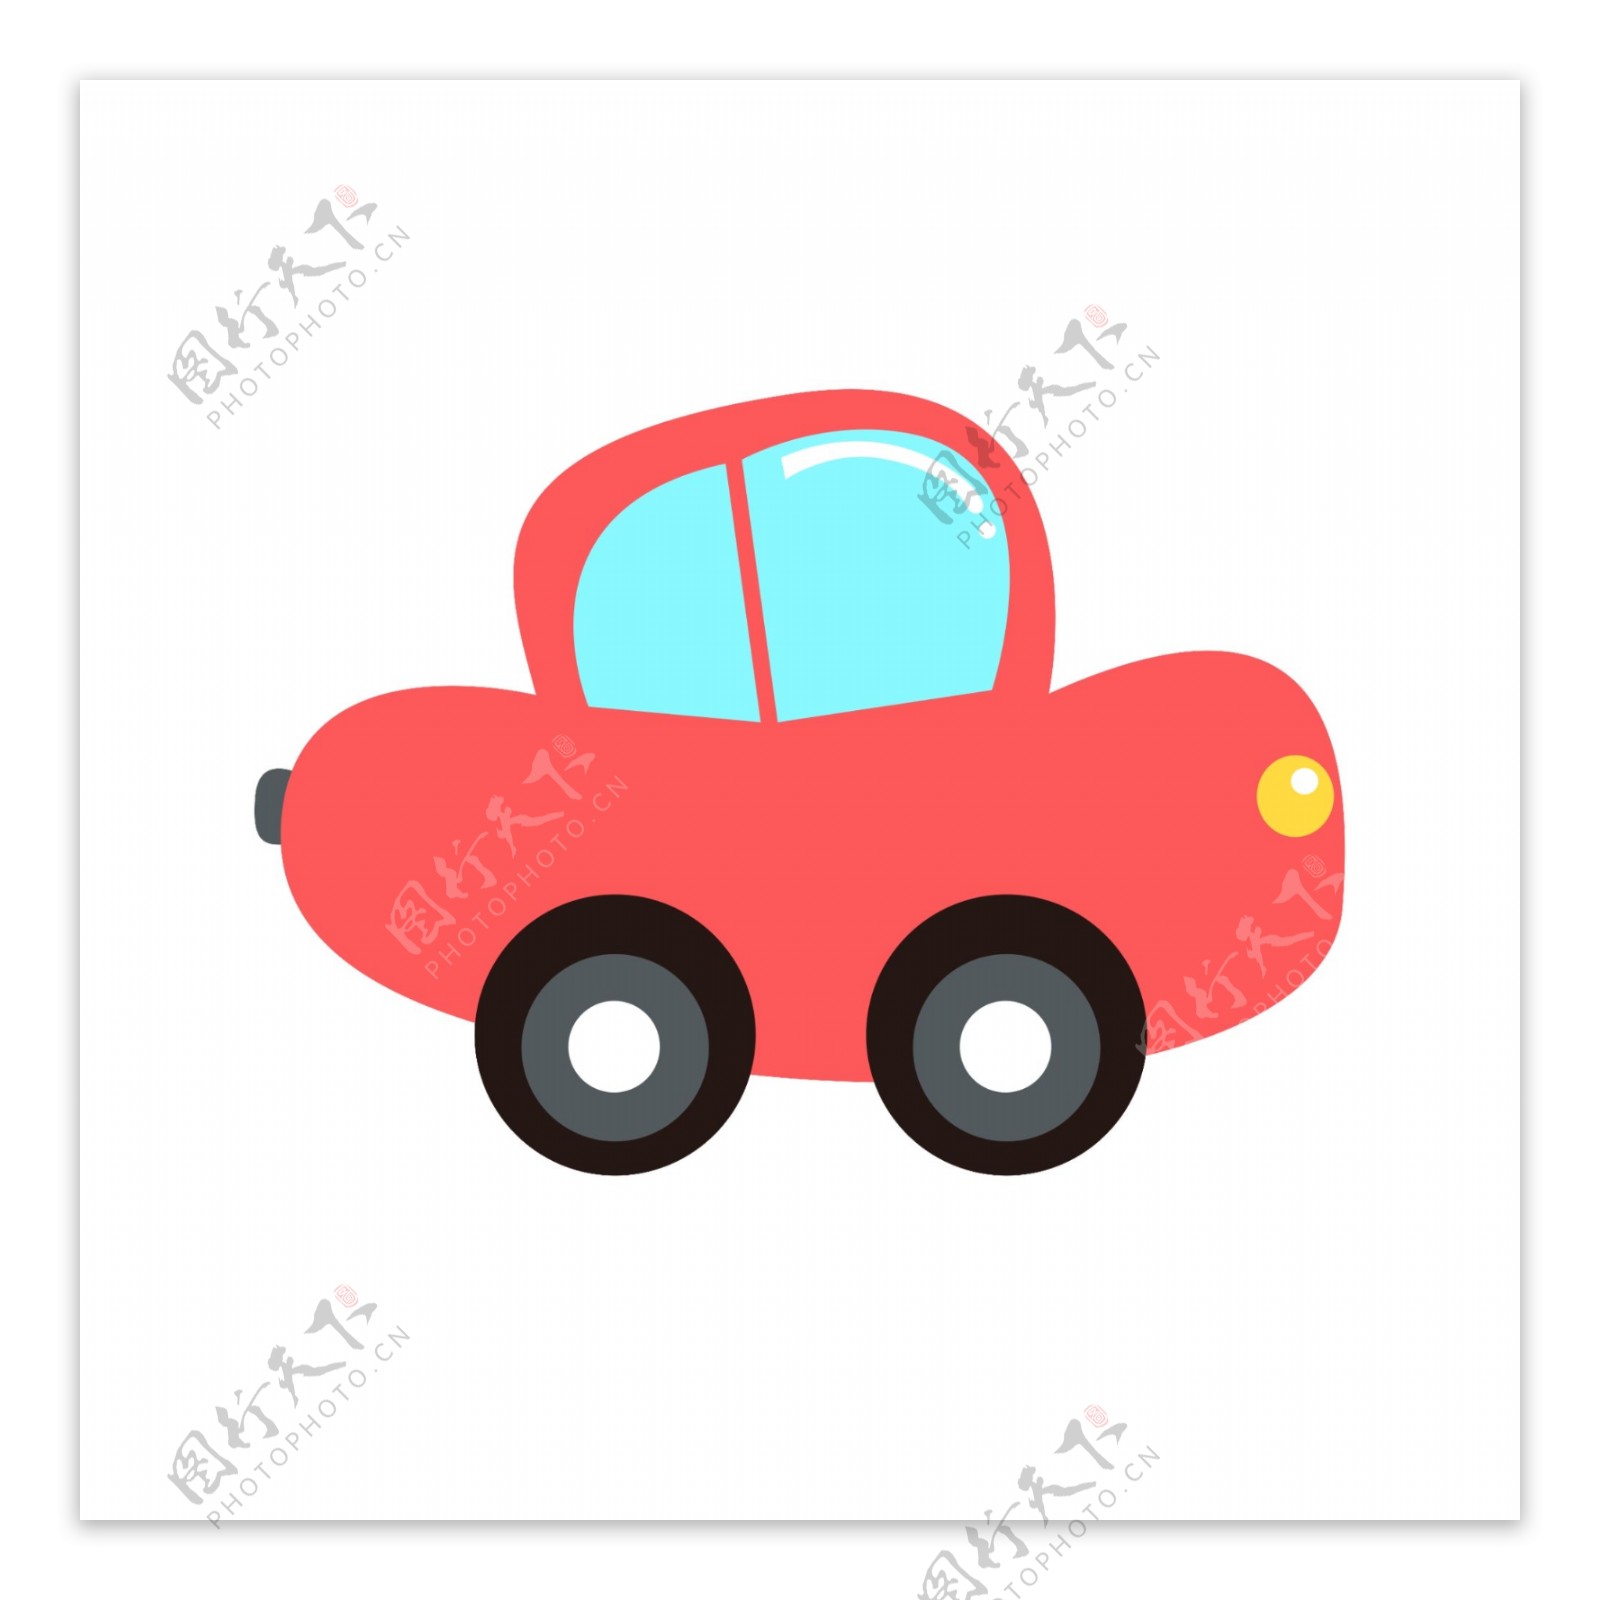 红色的玩具汽车插画